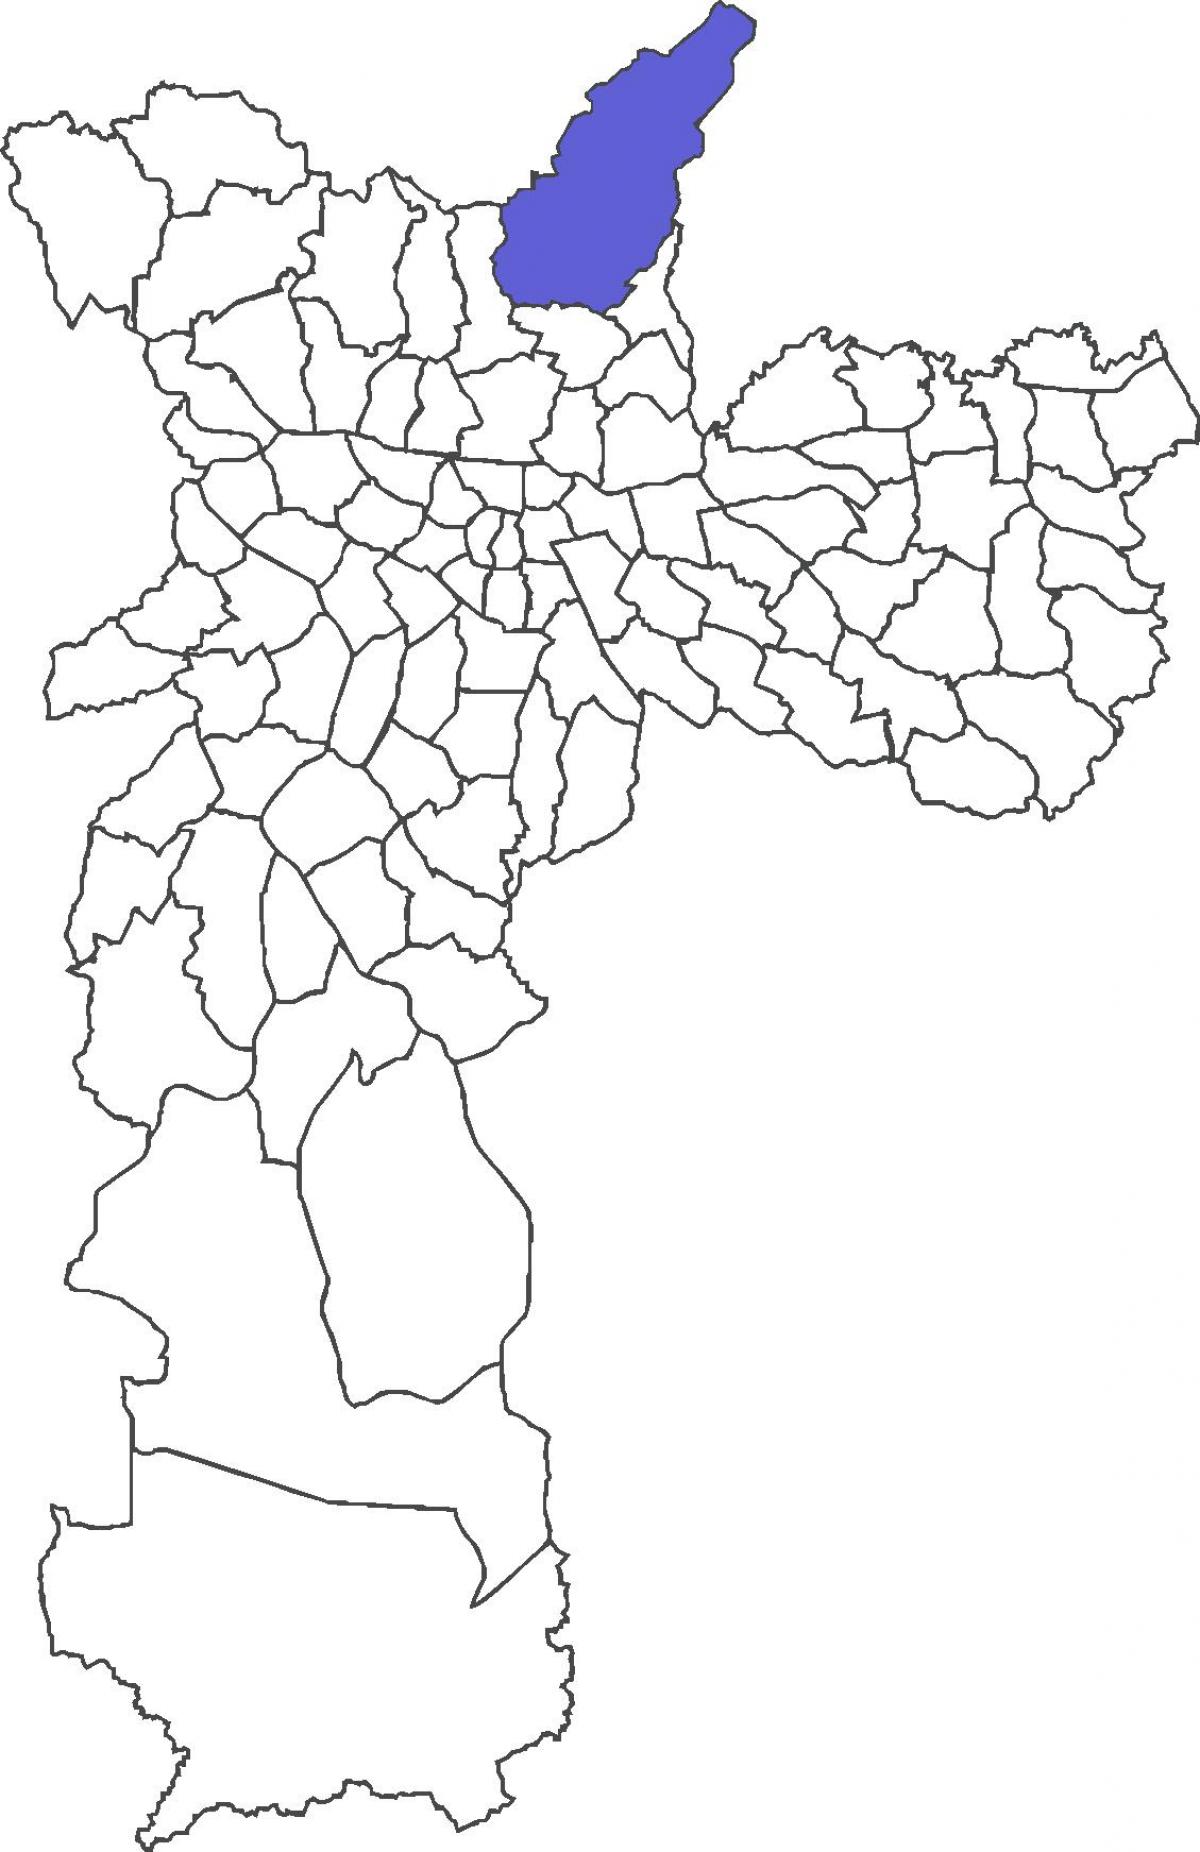 નકશો Tremembé જિલ્લા